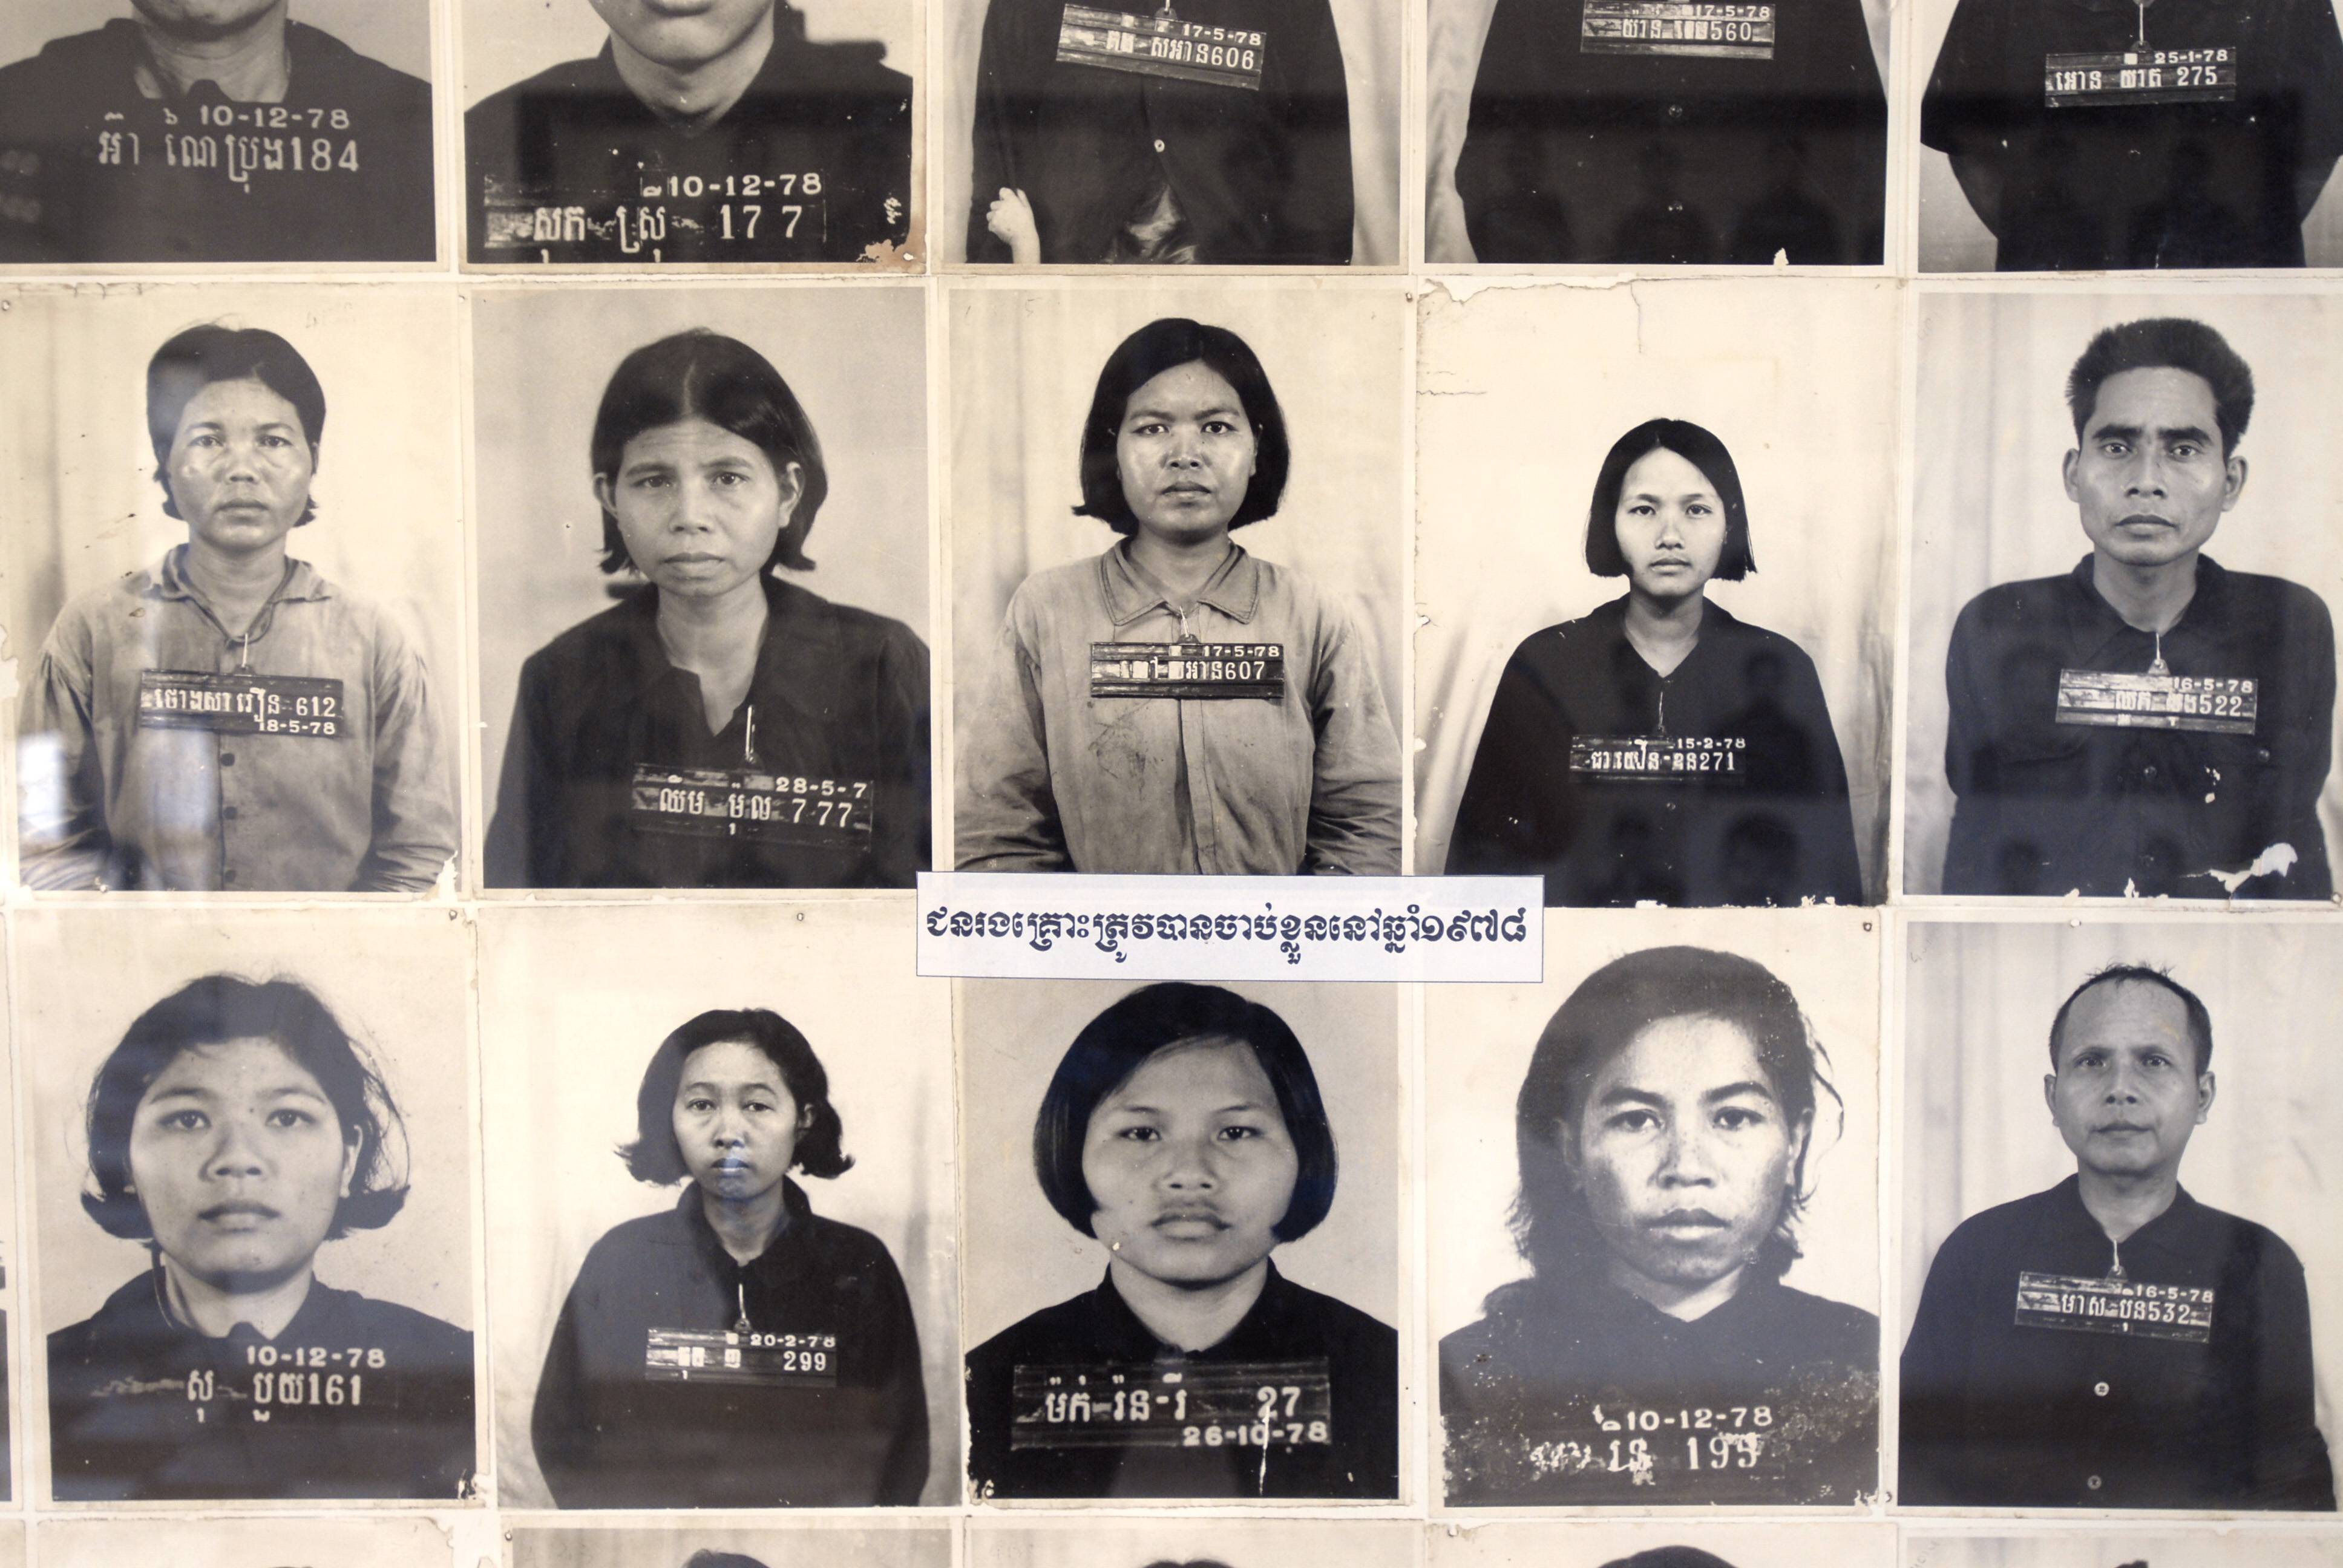 Bildnummer: 59874269  Datum: 29.03.2008  Copyright: imago/epd
Fotos von vor der Hinrichtung fotografierten Opfern im Gedenkstätten-Museum Tuol Sleng in Phnom Penh (Kambodscha) am 29.3.2008. In dem ehemaligen Konzentrationslager (17.4.1975 bis 7.1.1979) wurden unter Pol Pot etwa 20.000 Kinder, Frauen und Männer inhaftiert, gefoltert und anschließend auf bestialische Weise in Choeung Ek in der Nähe von Phnom Penh ermordet. Die frühere Schule Tuol Svay Prey wurde nach der Machtergreifung Pol Pots in die Folterkammer S 21 (Security Office 21) verwandelt. Fast niemand, der hierher kam, überlebte. DER ABDRUCK DES EPD-FOTOS IST HONORARPFLICHTIG! Tuol-Sleng-Museum in Phnom Penh (Kambodscha) 03 xcb x0x 2008 quer Asien Kambodscha Phnom Penh Geografie Städte Justiz Kriminalität Mord Strafvollzug Gefängnis Kultur Kunst Museen Politik Menschenrechte Folter Regierungen 

 59874269 Date 29 03 2008 Copyright Imago epd Photos from before the Execution photographed Victims in Memorials Museum Tuol Sleng in Phnom Penh Cambodia at 29 3 2008 in the former Concentration camps 17 4 1975 until 7 1 1979 were under POL Pot about 20 000 Children Women and Men imprisoned tortured and then on  Wise in Choeung EK in the Vicinity from Phnom Penh murdered the Earlier School Tuol Svay Prey was after the Seizure of power POL Pot in the Torture chamber S 21 Security Office 21 transforms Almost Nobody the here came survived the Imprint the epd Photos is  Tuol Sleng Museum in Phnom Penh Cambodia 03  x0x 2008 horizontal Asia Cambodia Phnom Penh Geography Cities Justice Crime Murder Prison Prison Culture Art Museums politics Human rights Torture Governments